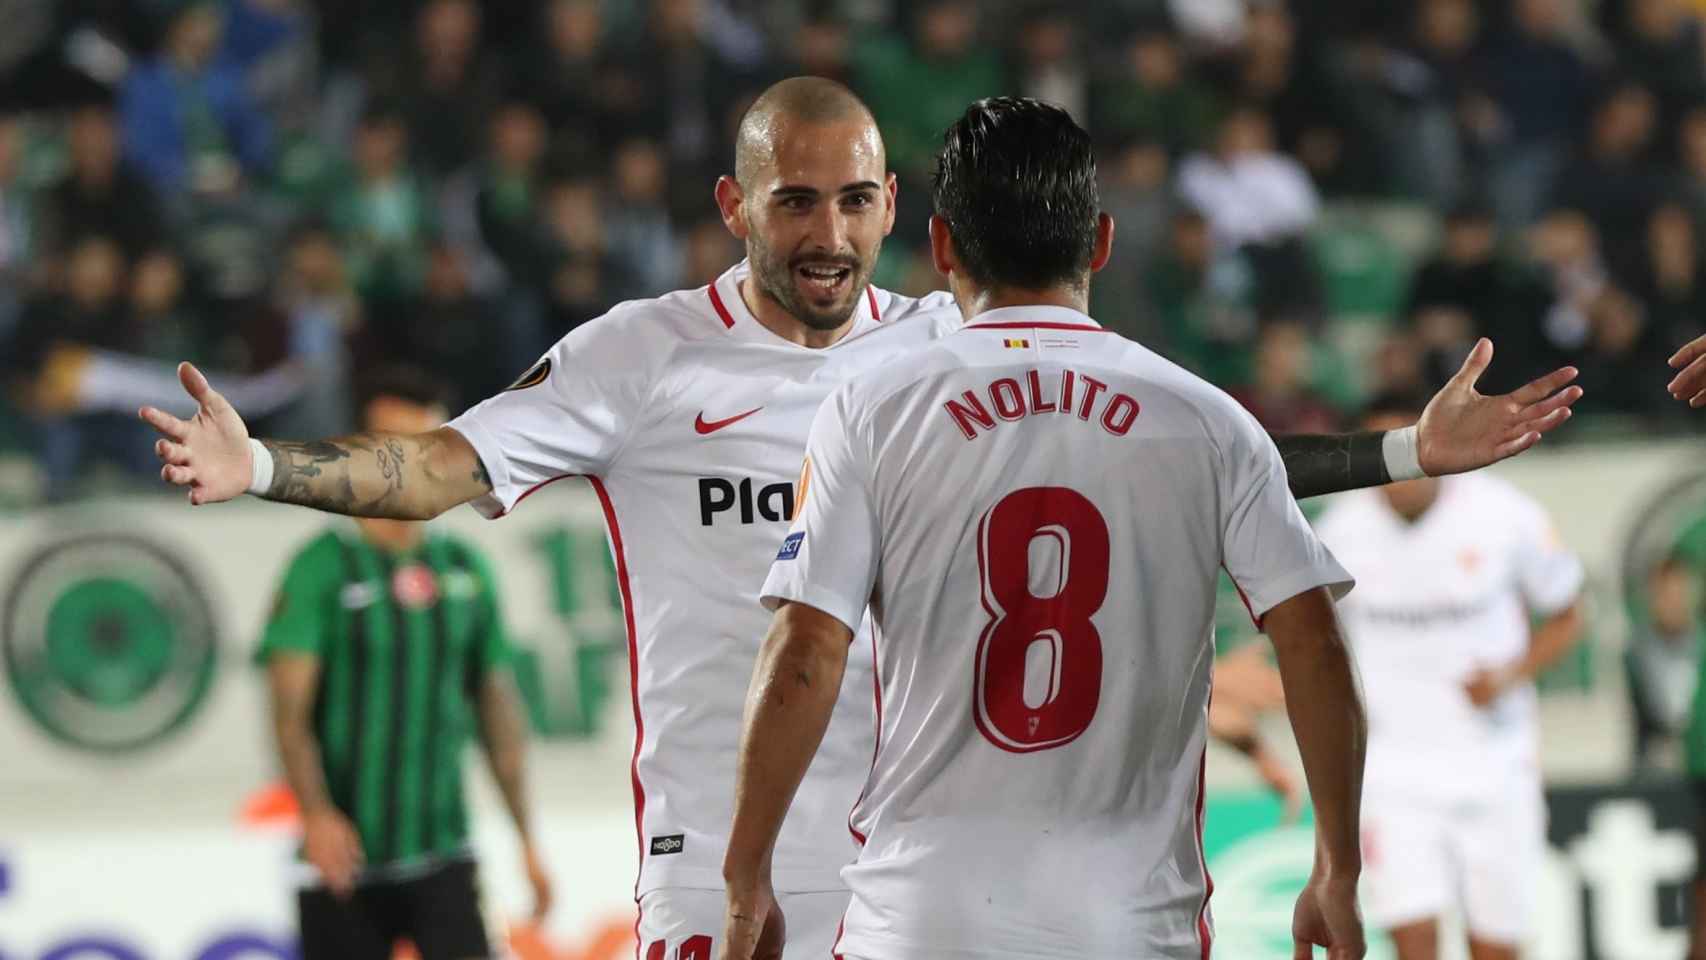 Akhisar Belediyespor vs Sevilla FC